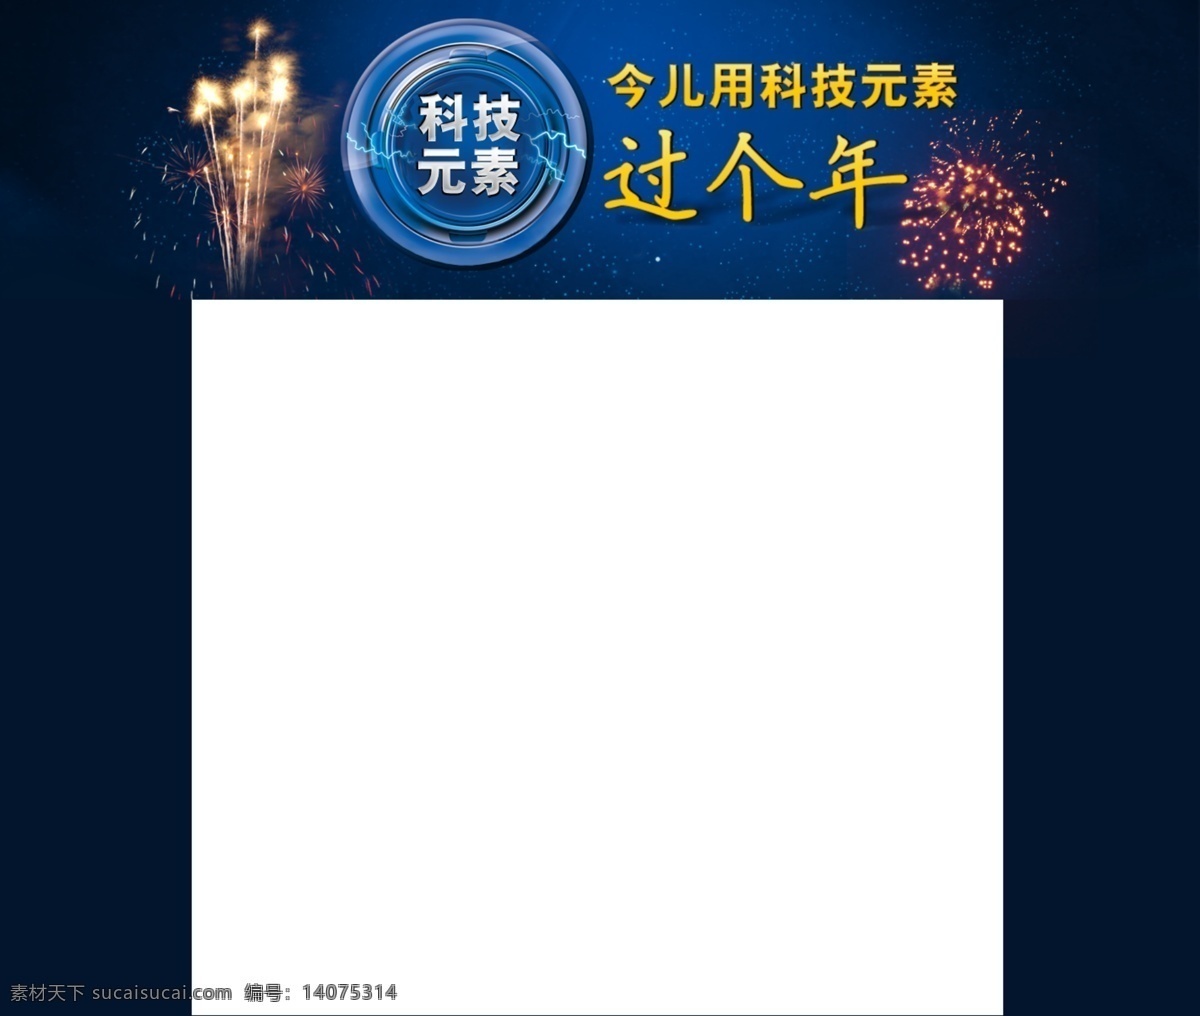 科技 过年 网页 头 图 网页模板 网站专题 源文件 中文模版 科技过年 网页头图 网页素材